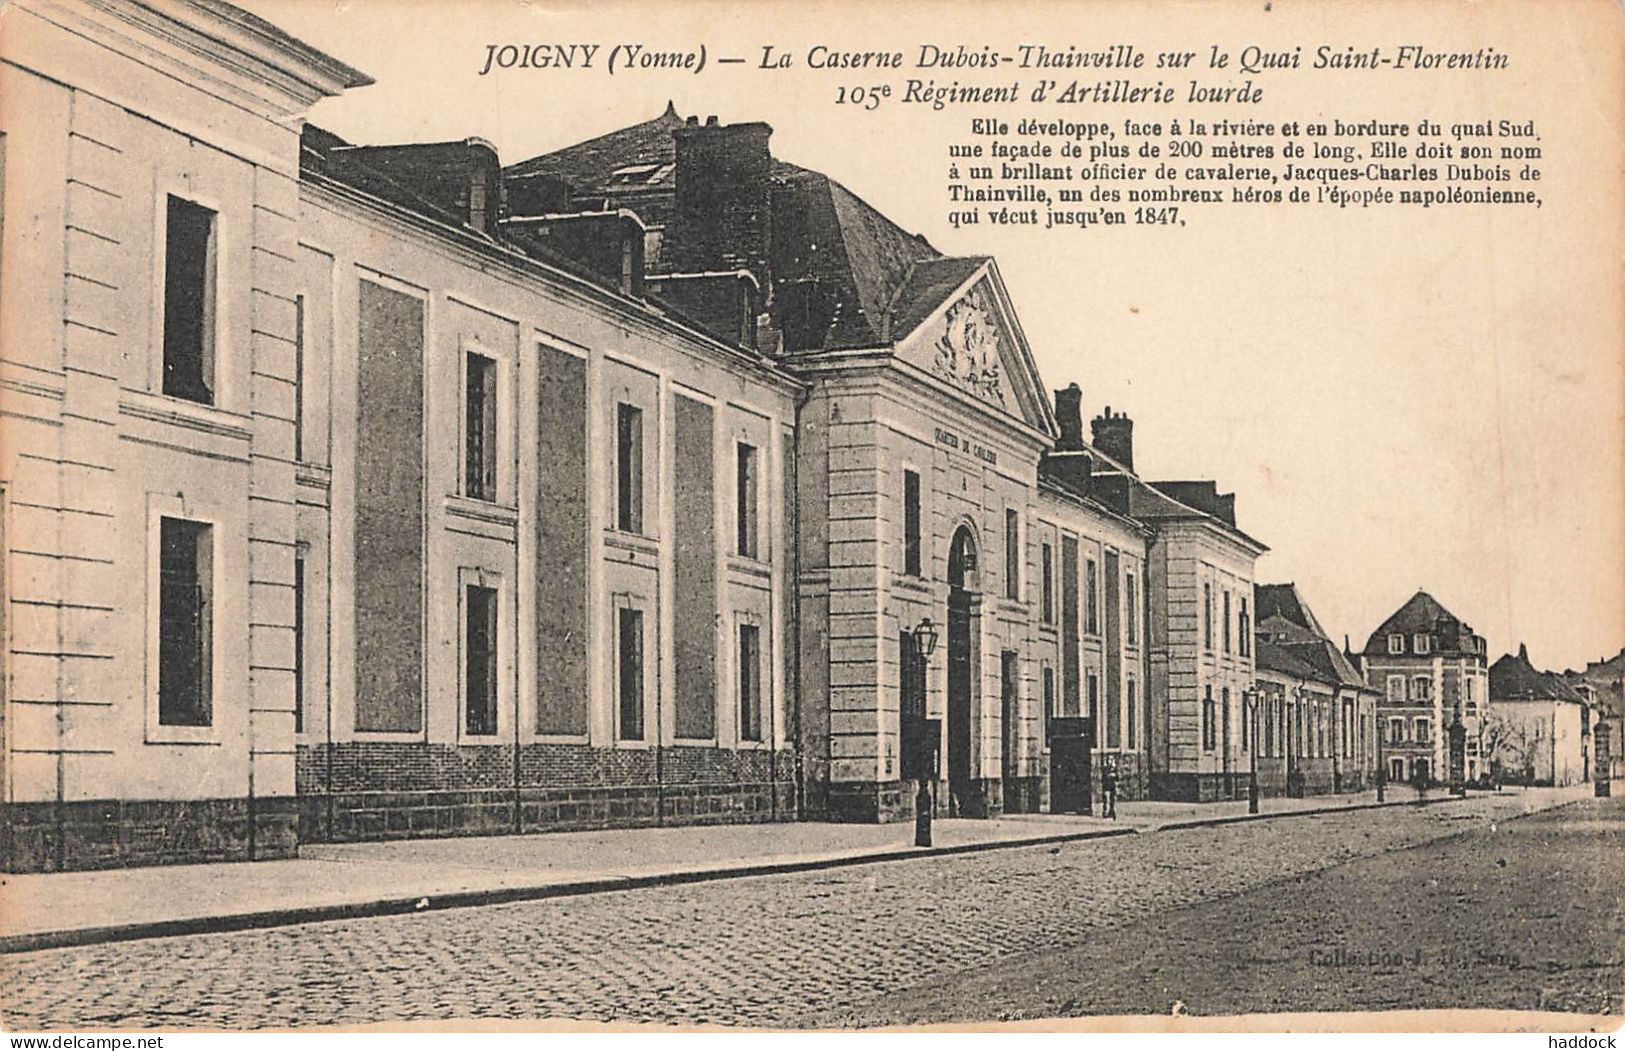 JOIGNY : LA CASERNE DUBOIS THAINVILLE SUR LE QUAI SAINT FLORENTIN 105e REGIMENT D'ARTILLERIE LOURDE - Joigny